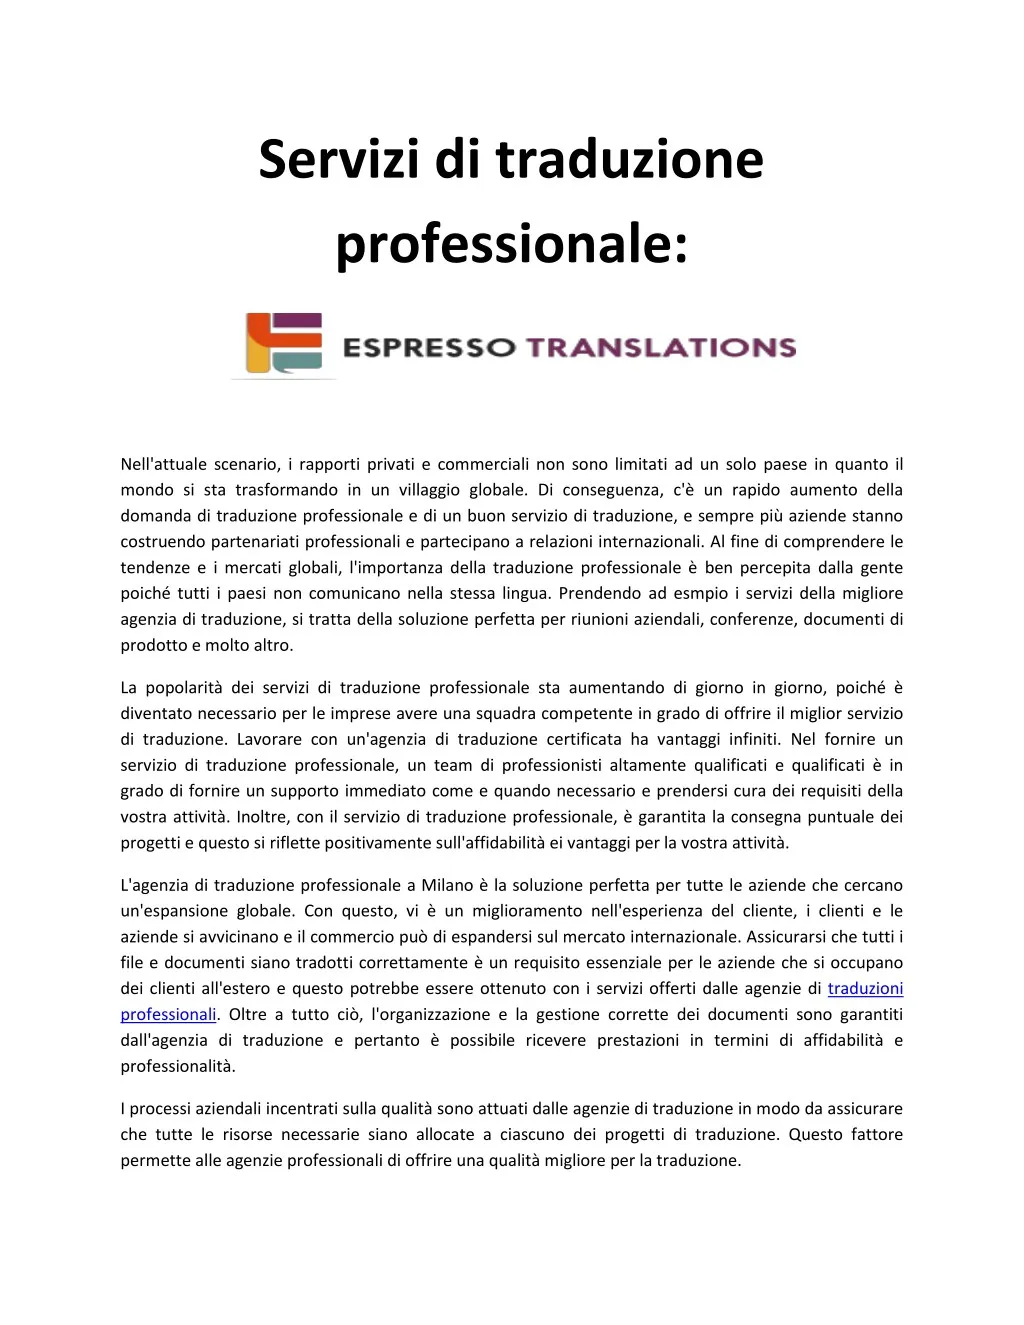 servizi di traduzione professionale